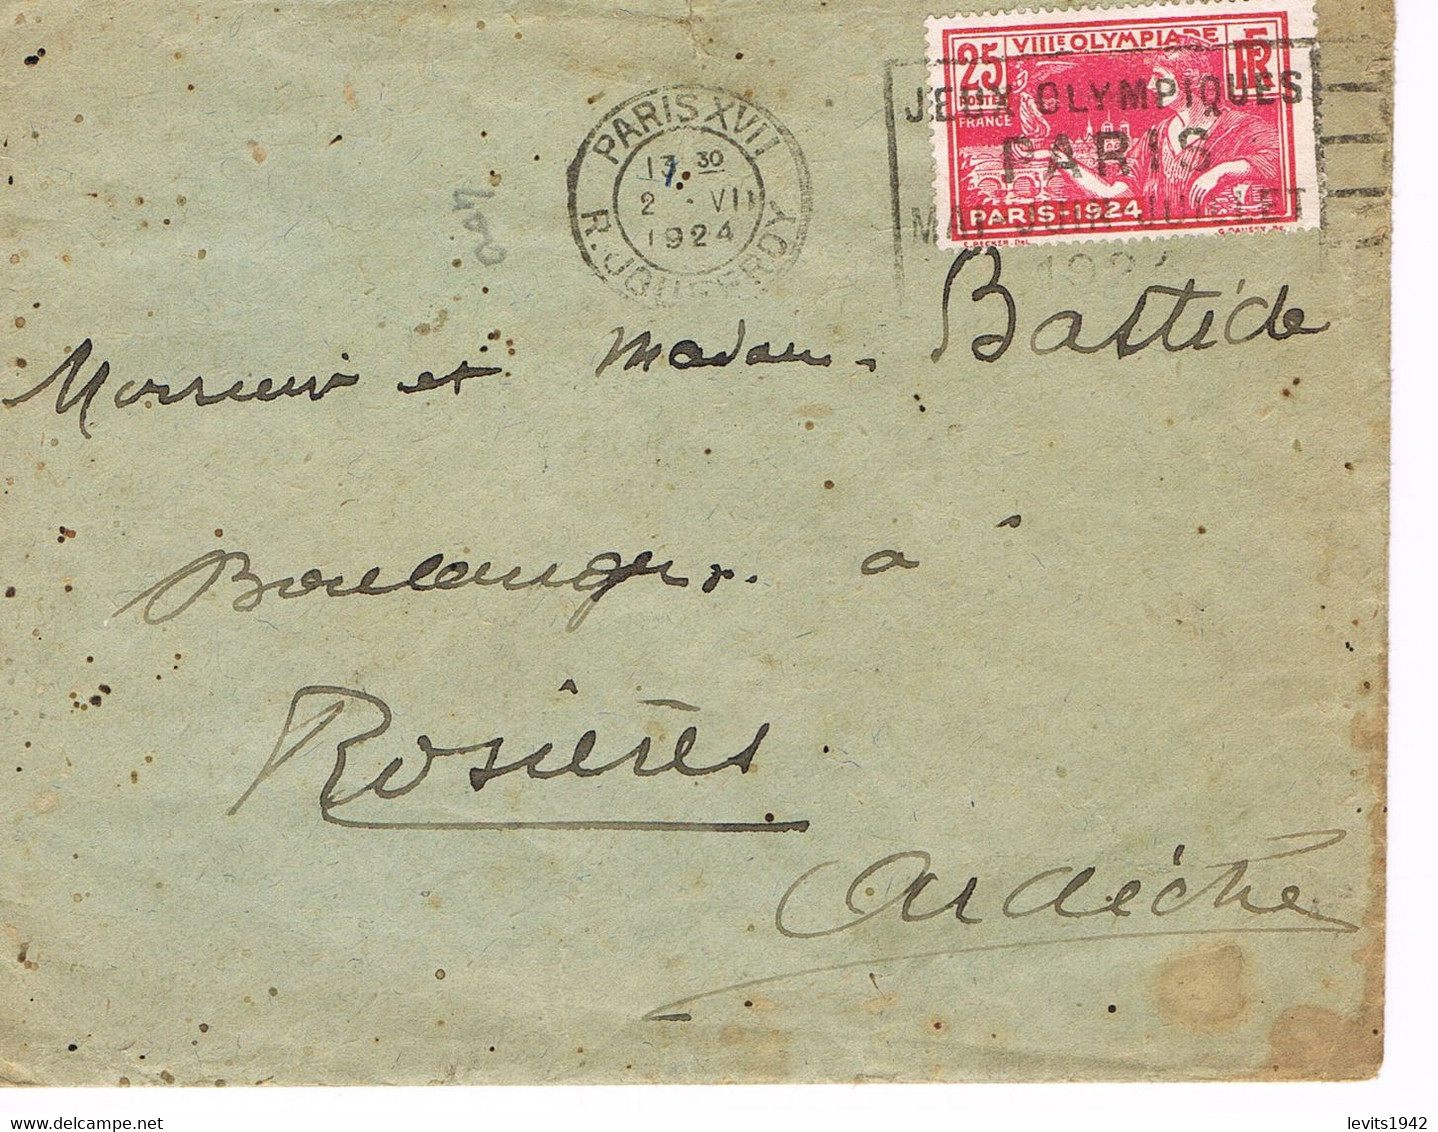 JEUX OLYMPIQUES 1924 -  MARQUE POSTALE - TIMBRE CONCORDANT - 02-07 - JOUR DE COMPETITION - ESCRIME - TIR - - Summer 1924: Paris